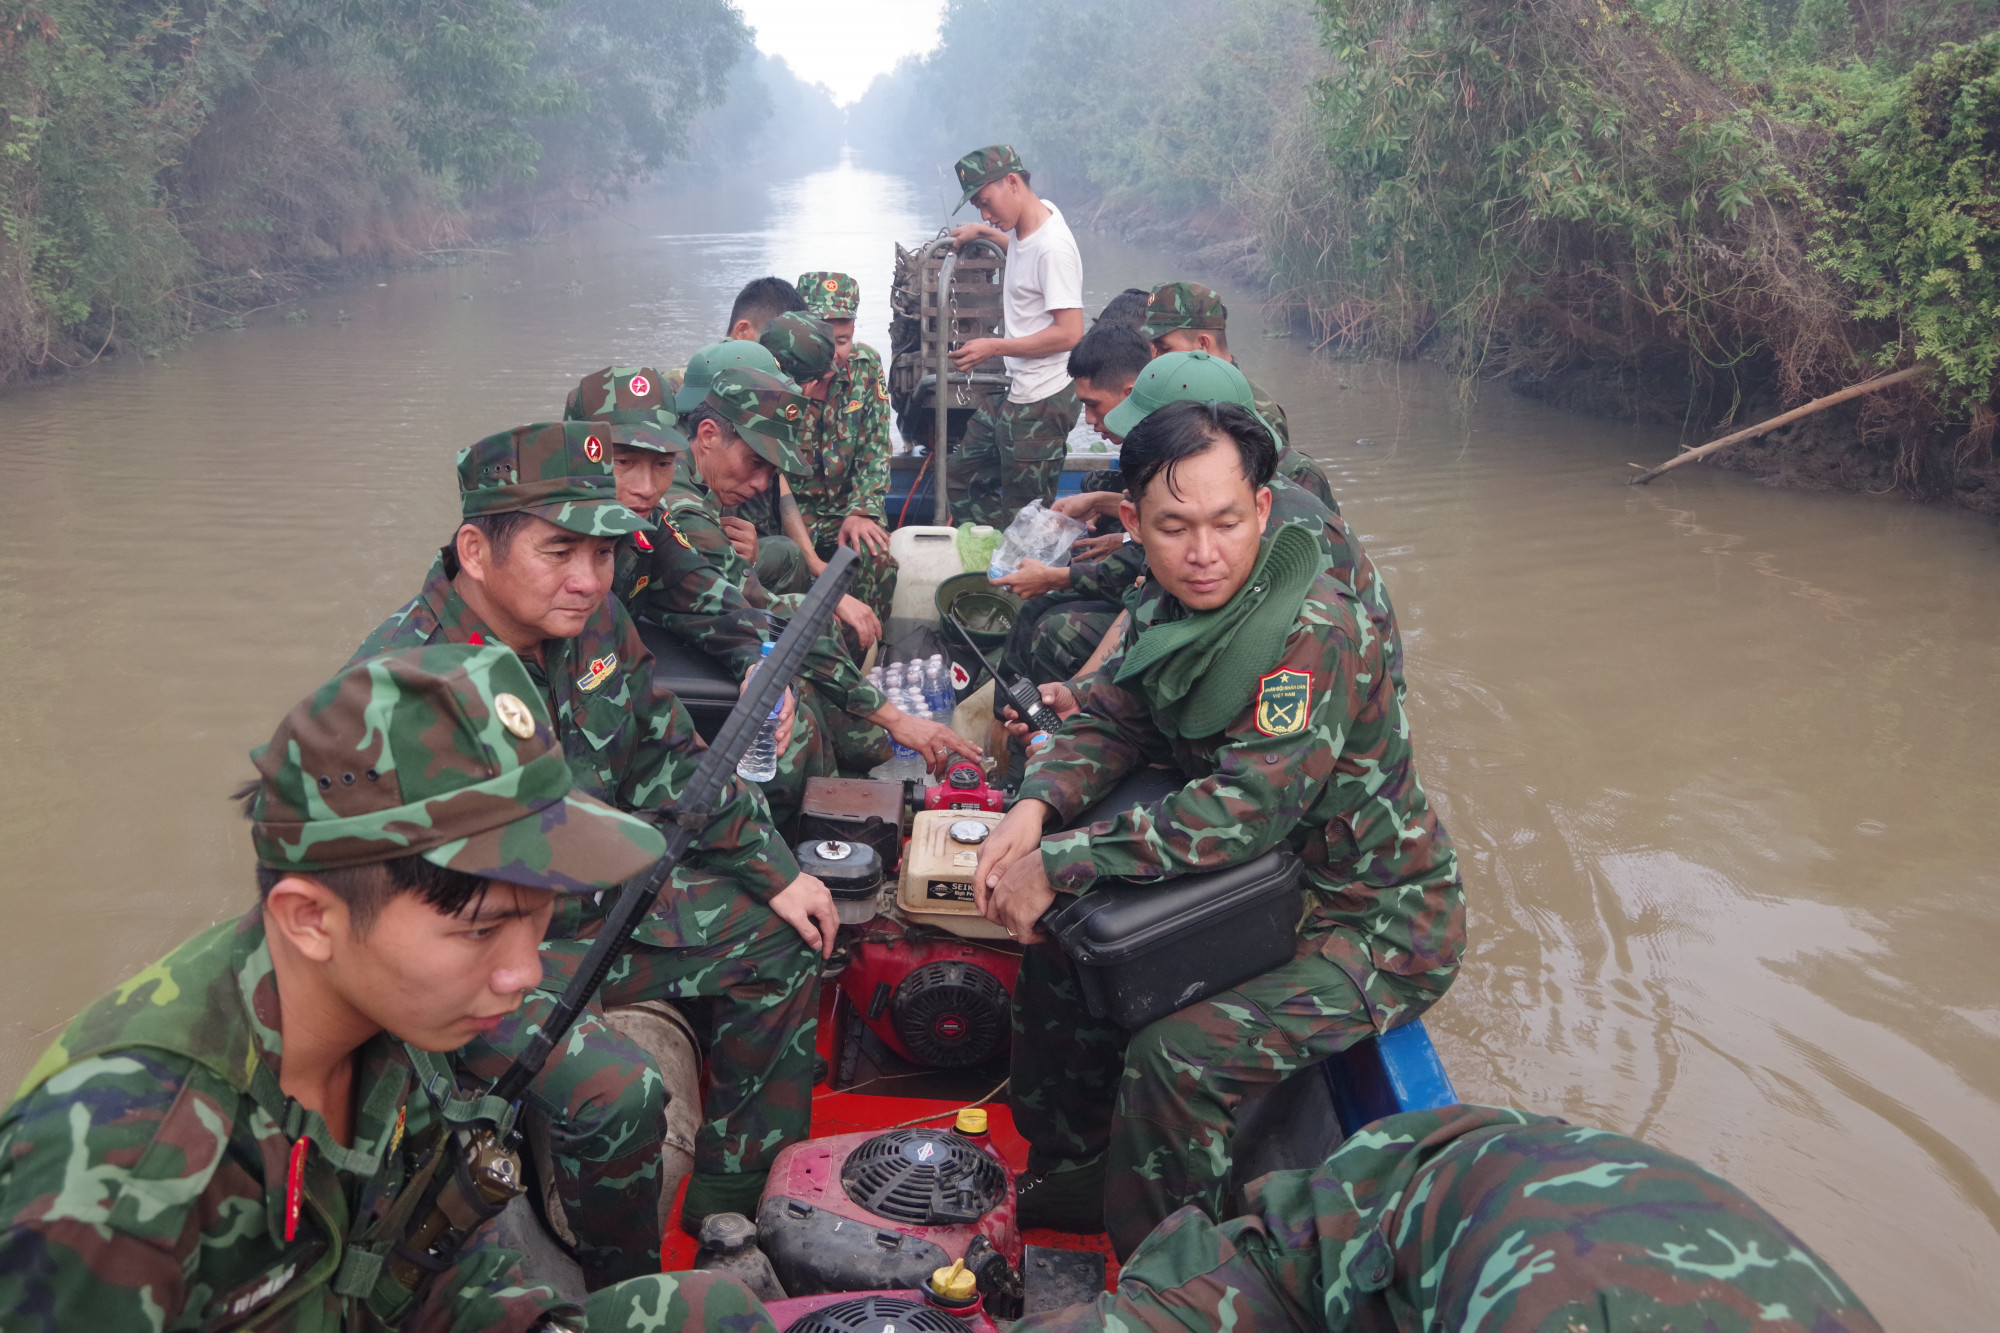 Sau khi xuất hiện đám cháy lớn Bộ CHQS tỉnh Kiên Giang đã điều động gần 200 cán bộ, chiến sĩ tham gia chữa cháy. Công an tỉnh Kiên Giang cũng cử lực lượng tham gia.